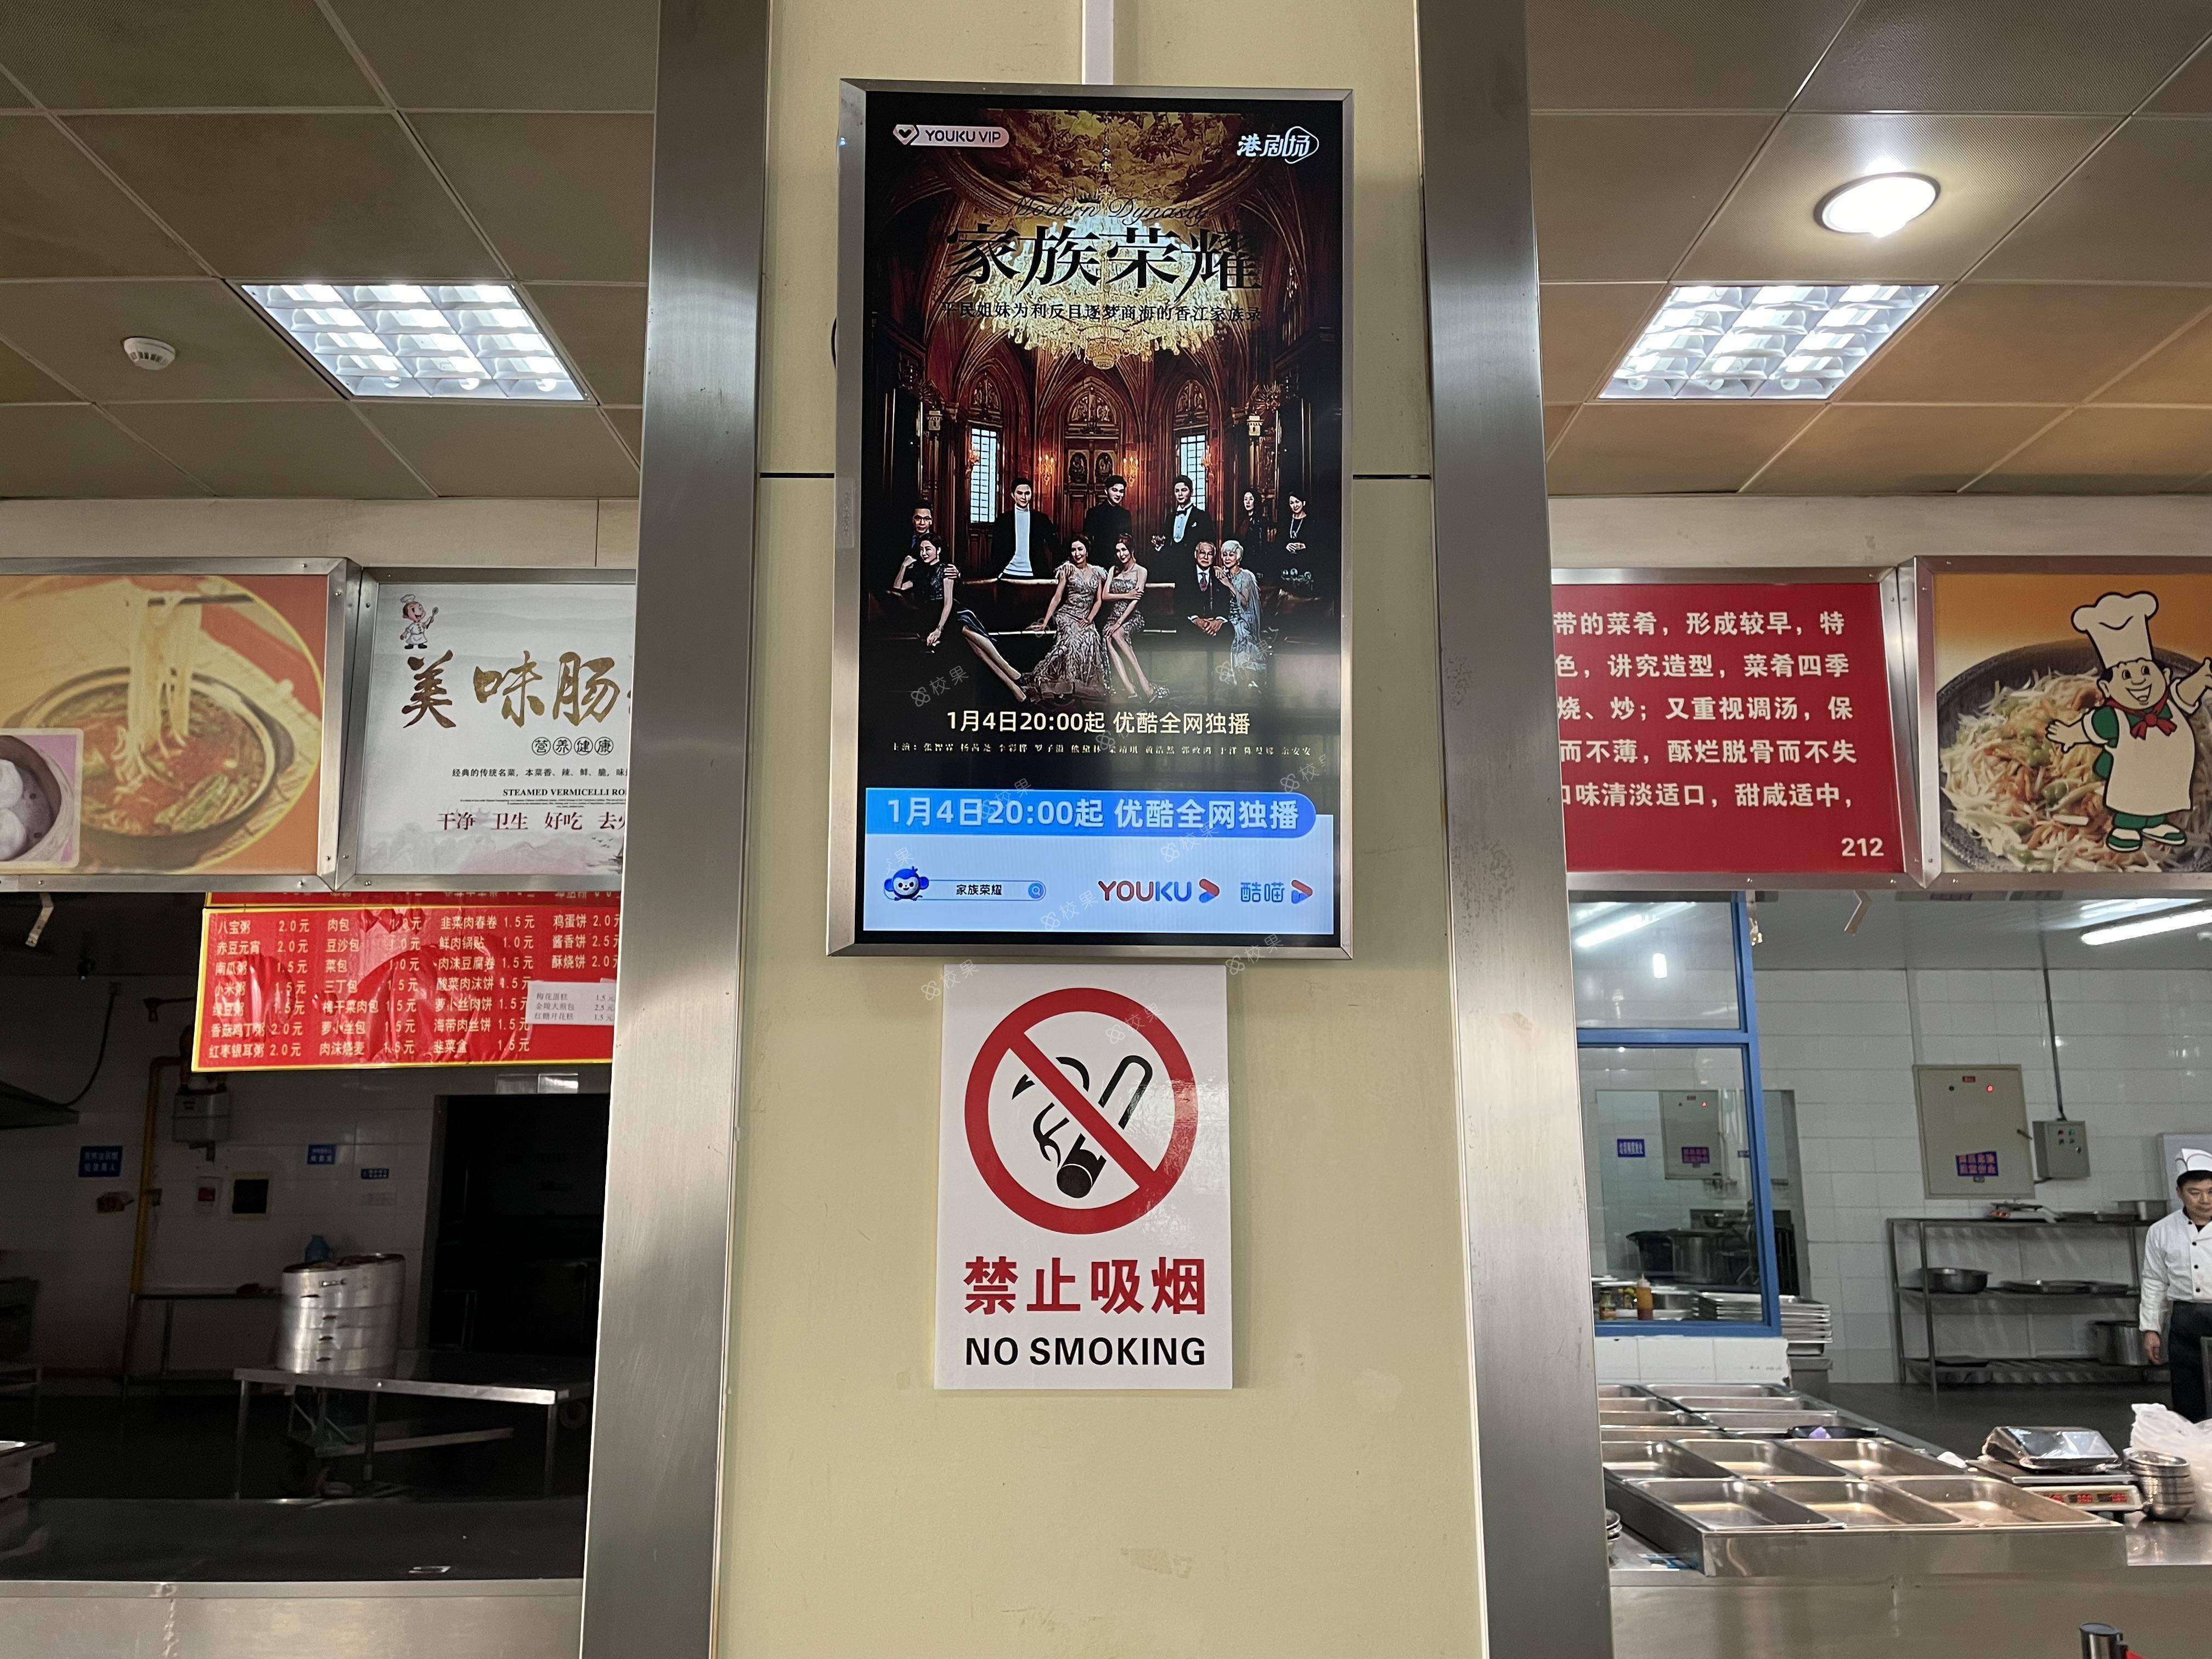 液晶屏广告 中国矿业大学